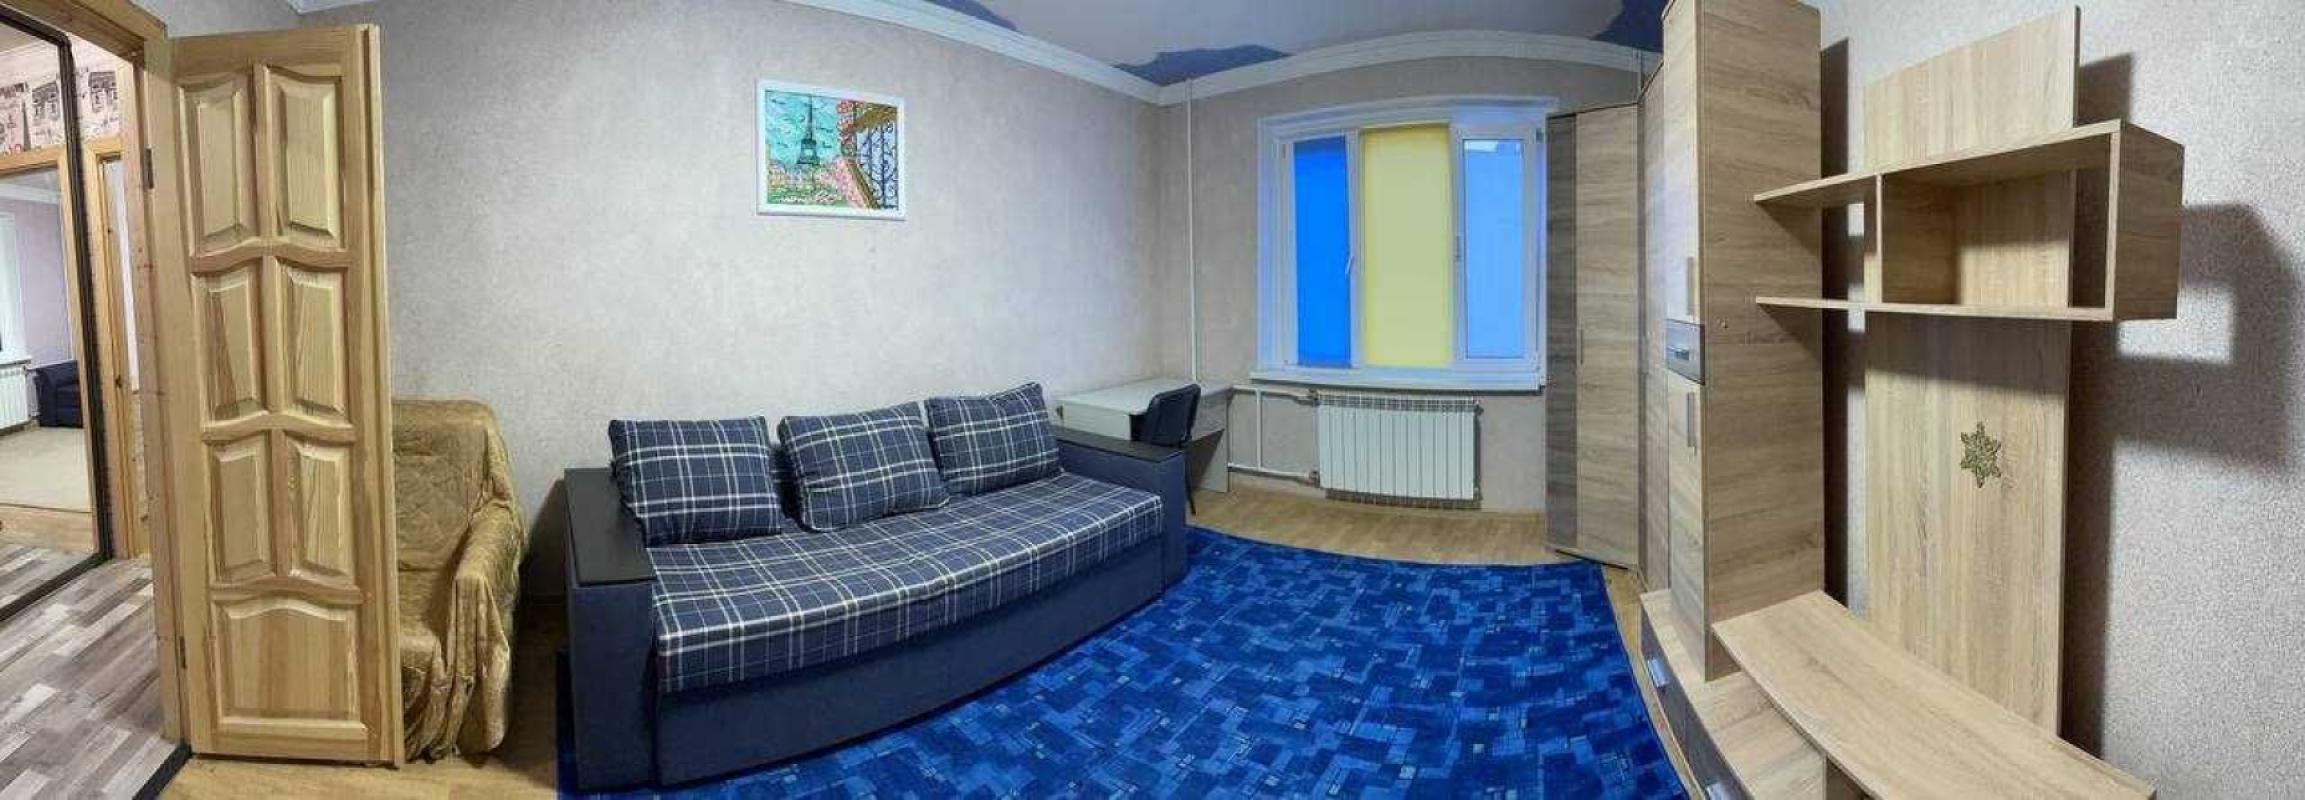 Долгосрочная аренда 2 комнатной квартиры Драгоманова ул. 3